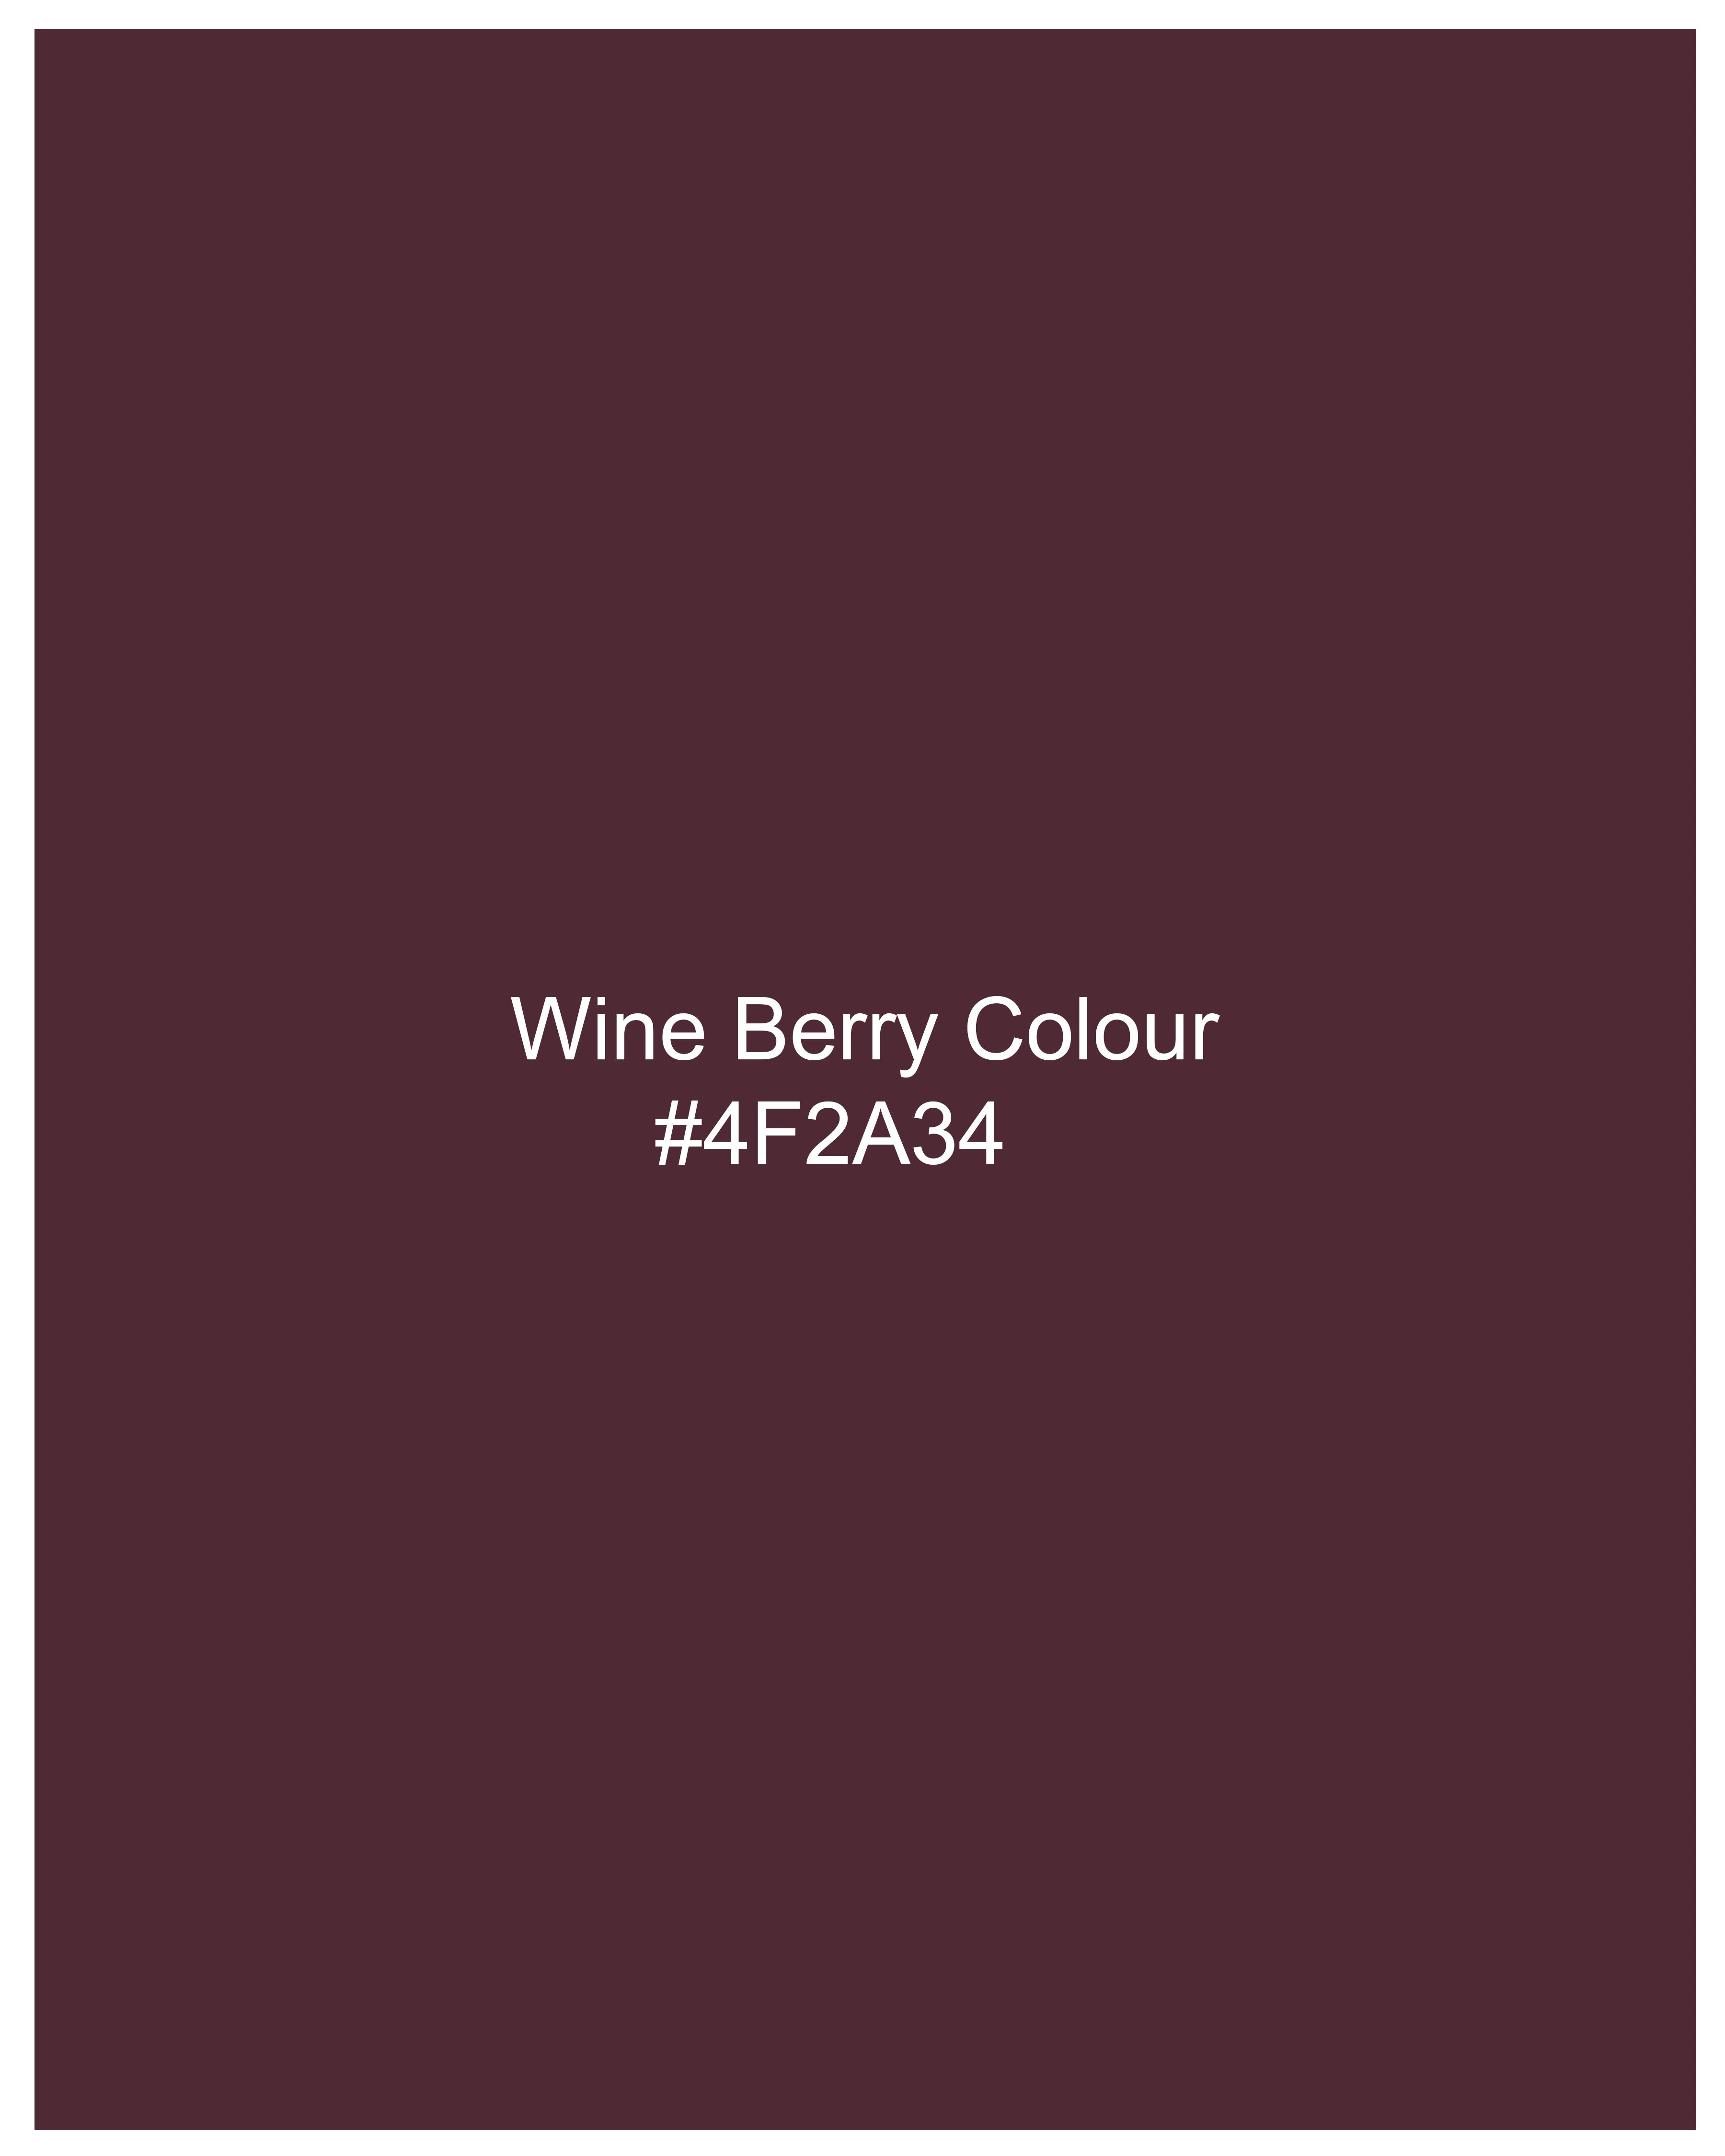 Wine Berry Premium Cotton Shirt 9143-BLK-38,9143-BLK-H-38,9143-BLK-39,9143-BLK-H-39,9143-BLK-40,9143-BLK-H-40,9143-BLK-42,9143-BLK-H-42,9143-BLK-44,9143-BLK-H-44,9143-BLK-46,9143-BLK-H-46,9143-BLK-48,9143-BLK-H-48,9143-BLK-50,9143-BLK-H-50,9143-BLK-52,9143-BLK-H-52